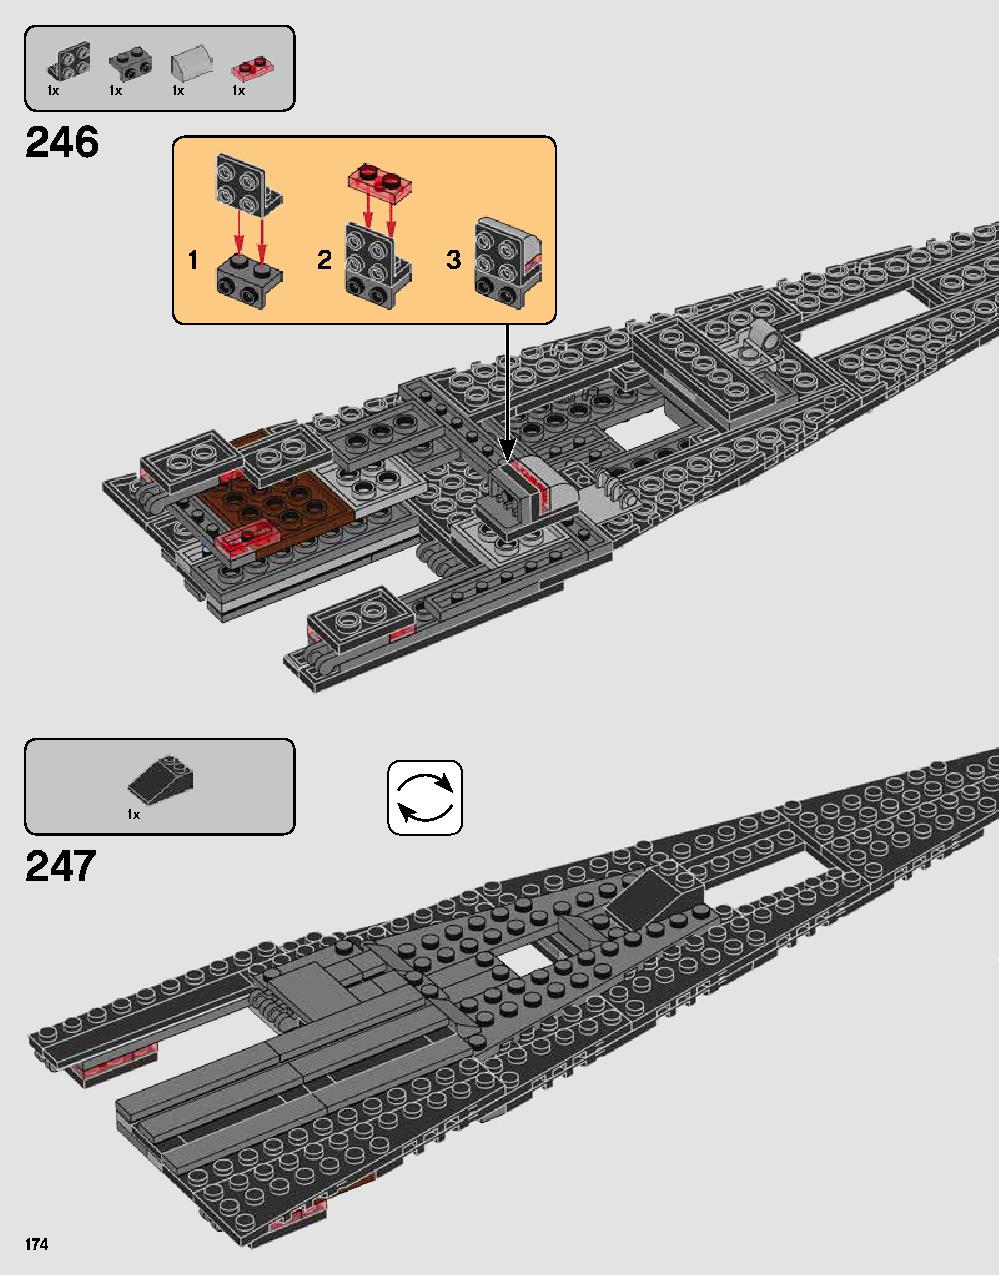 ダース・ベイダーの城 75251 レゴの商品情報 レゴの説明書・組立方法 174 page